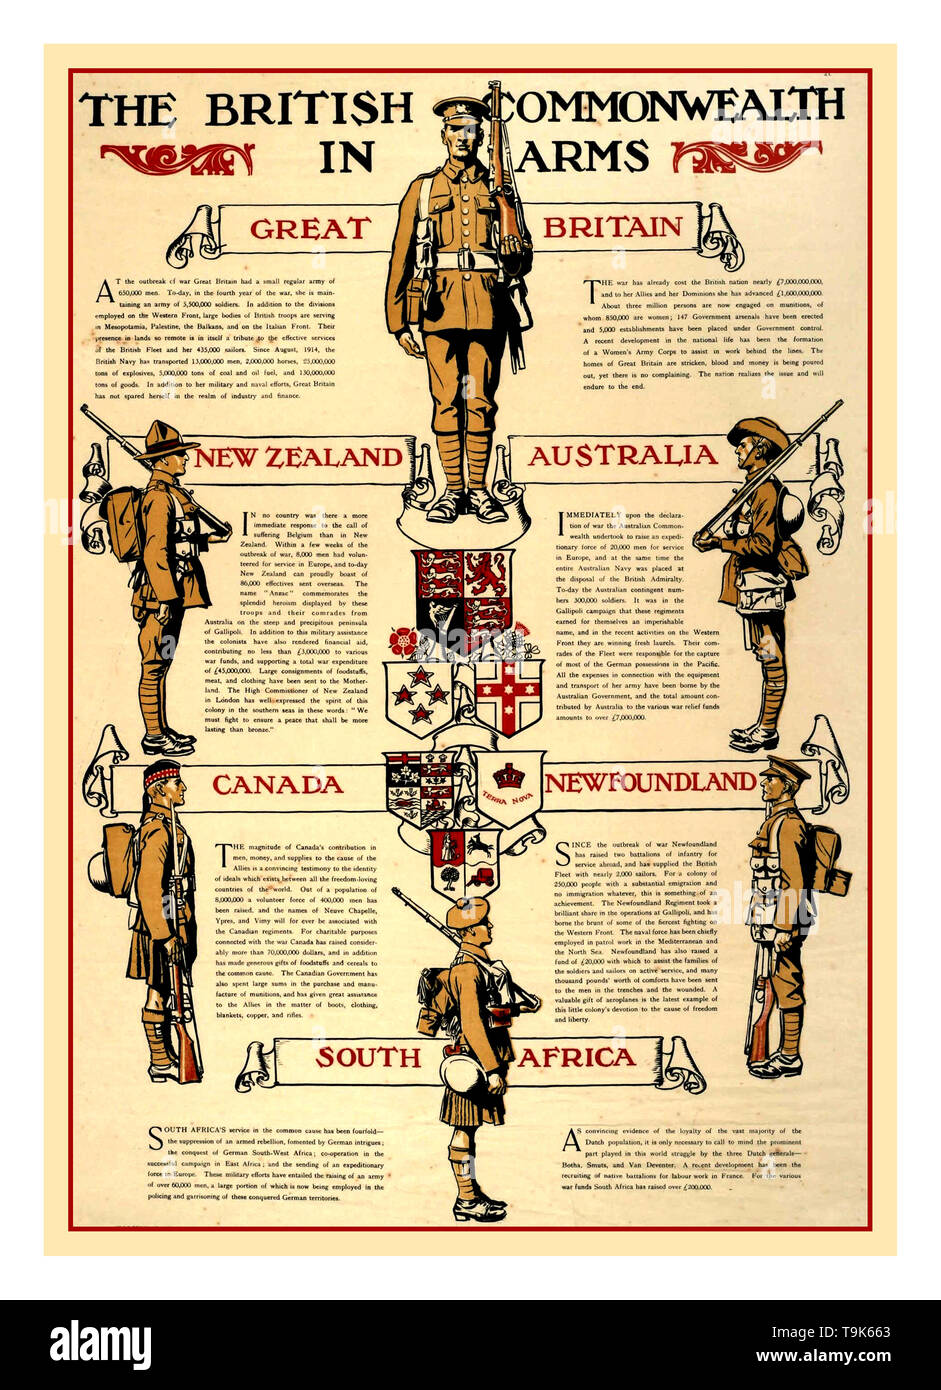 Vintage WW1 Première Guerre mondiale affiche de propagande des Forces armées du Commonwealth Les uniformes des services armés "Le Commonwealth Britannique dans les armes" de l'affiche britannique de WW1. Banque D'Images